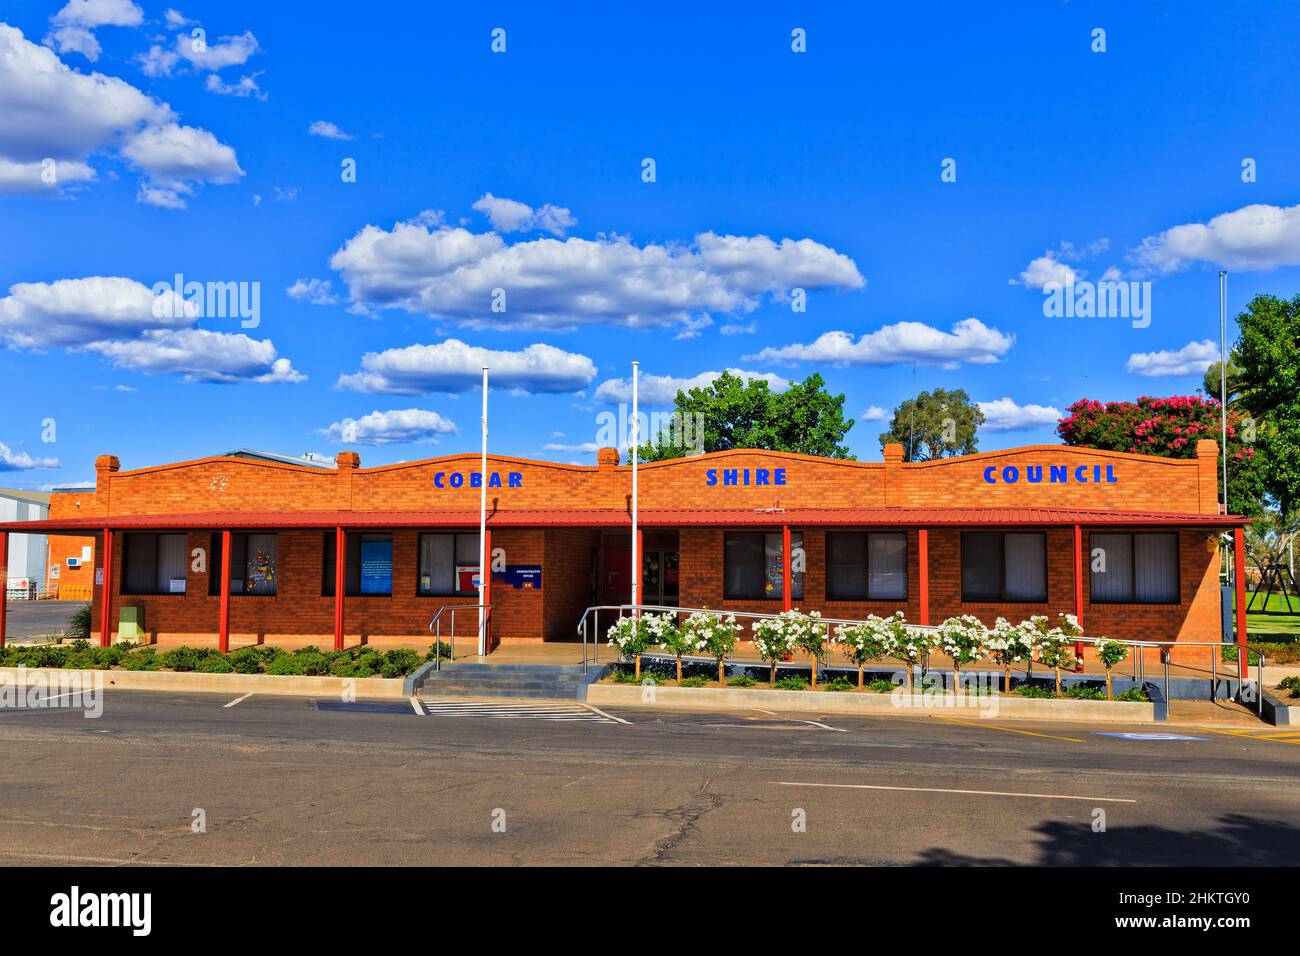 Cobar shire council camere di servizi pubblici nella città mineraria locale regionale Cobar dell'Outback australia. Foto Stock